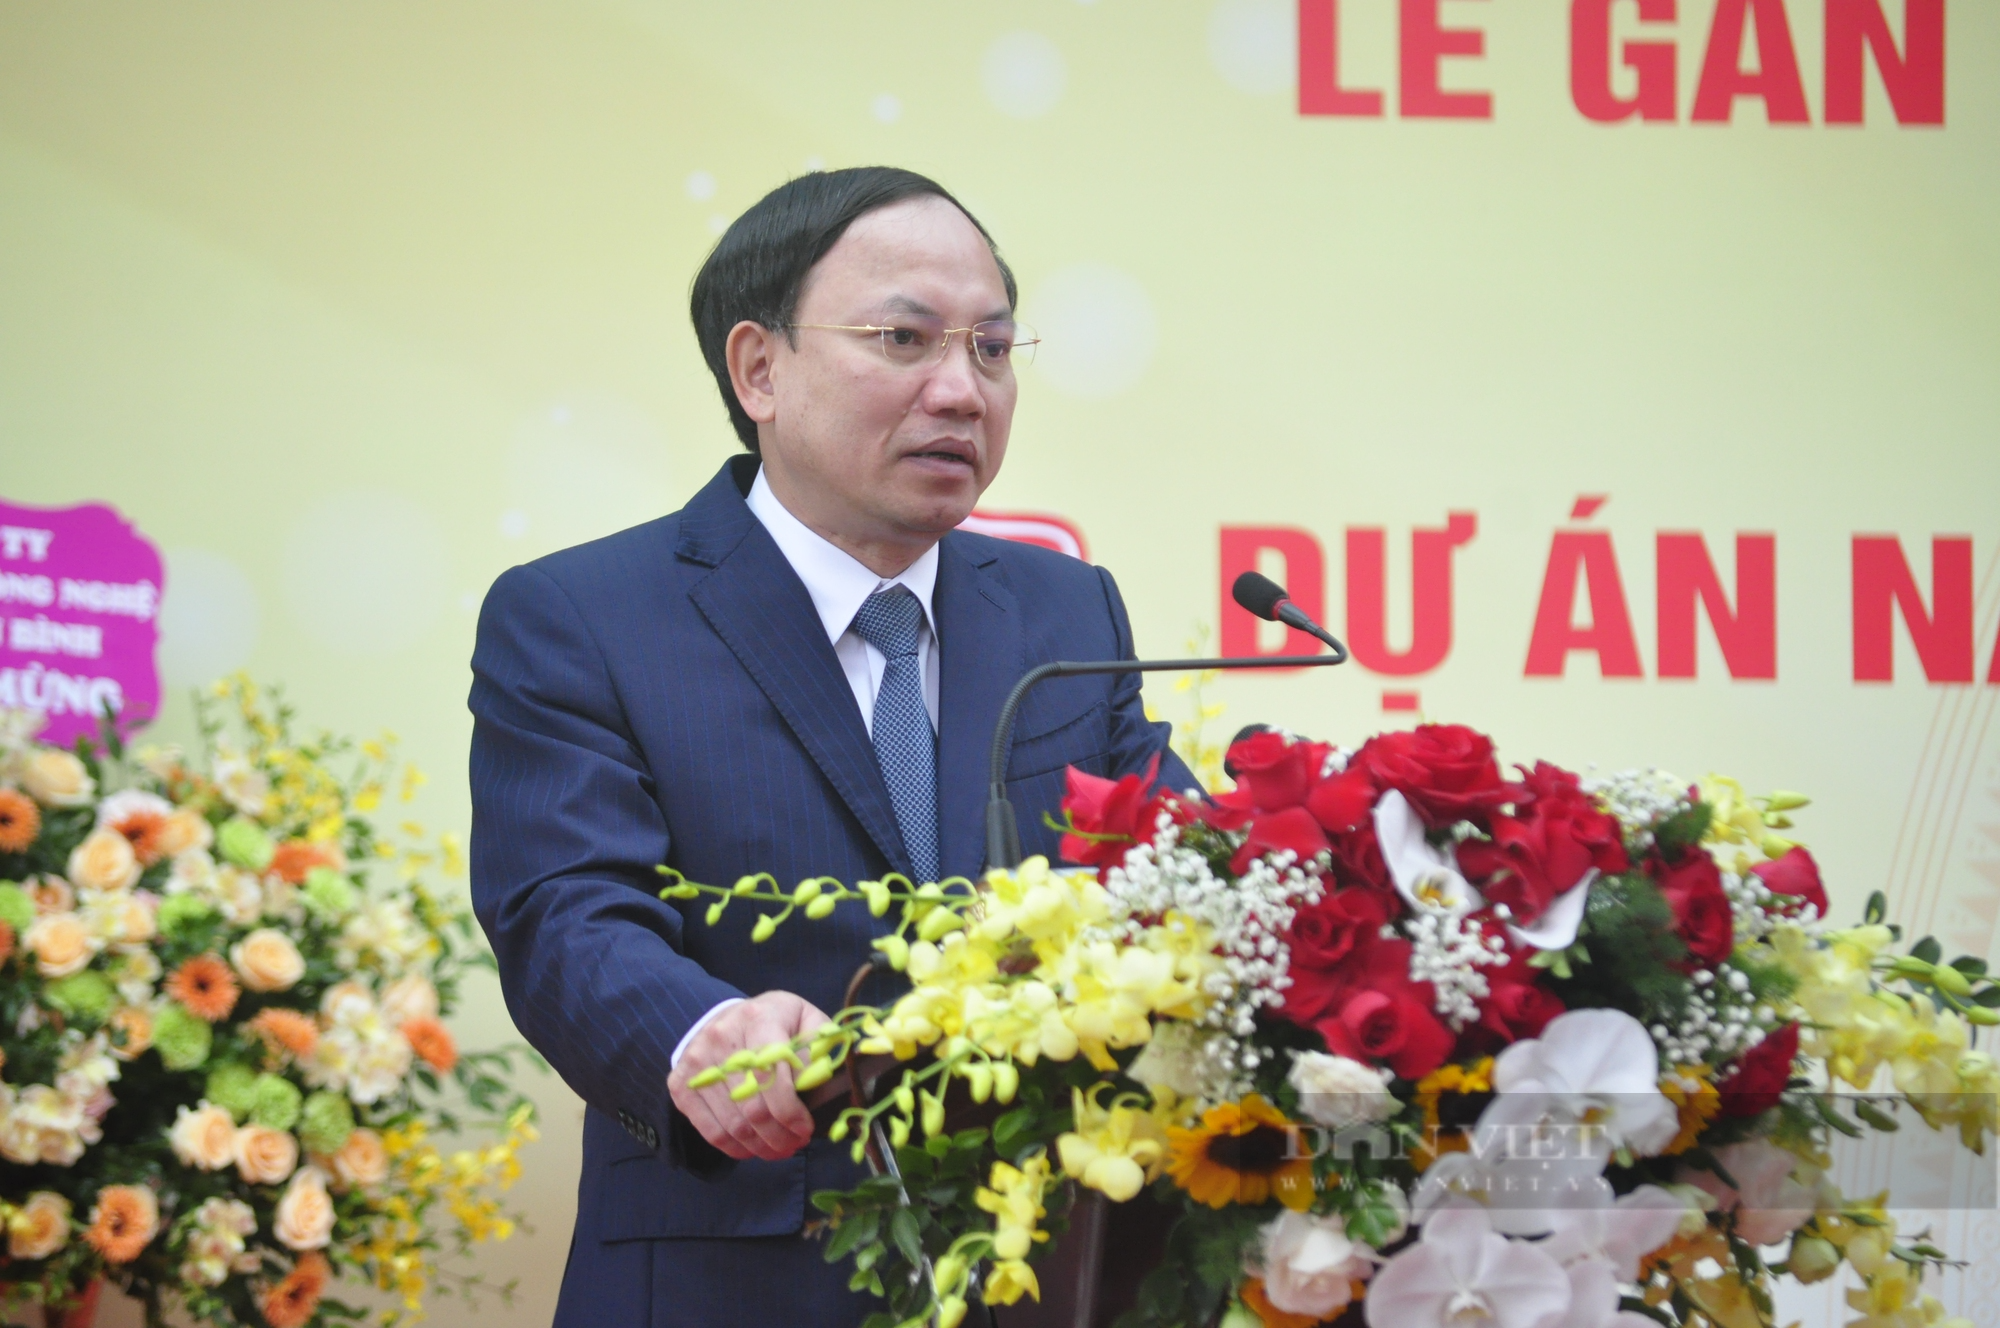 Quảng Ninh gắn biển loạt công trình chào mừng 60 năm Ngày thành lập tỉnh - Ảnh 2.